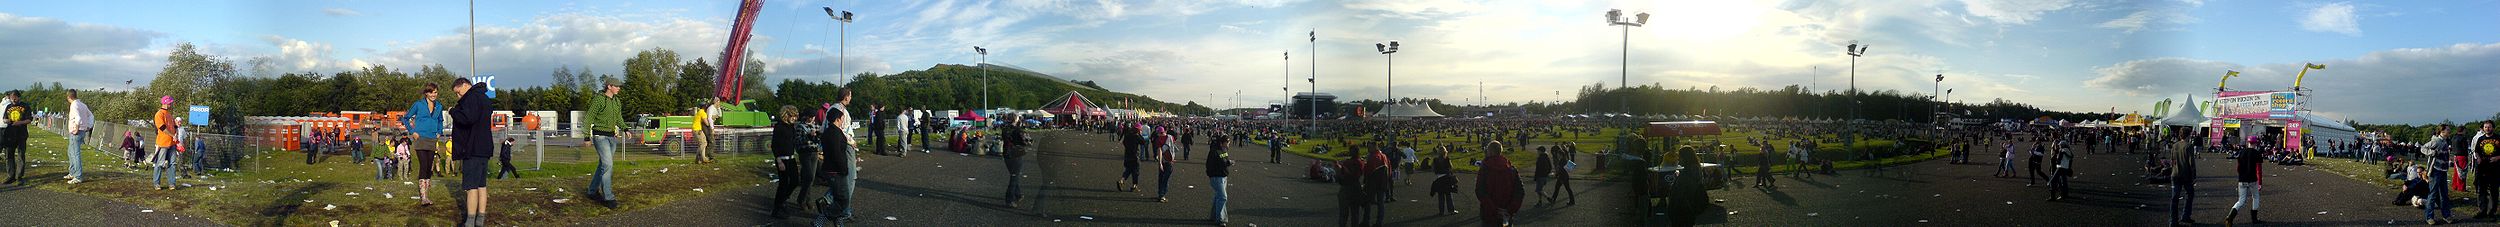 PinkPop Festival 2007: Rundumsicht auf Mainstage und BUMA/ John Peel Stage (3FM Stage verdeckt im rechten Teil des Bildes)